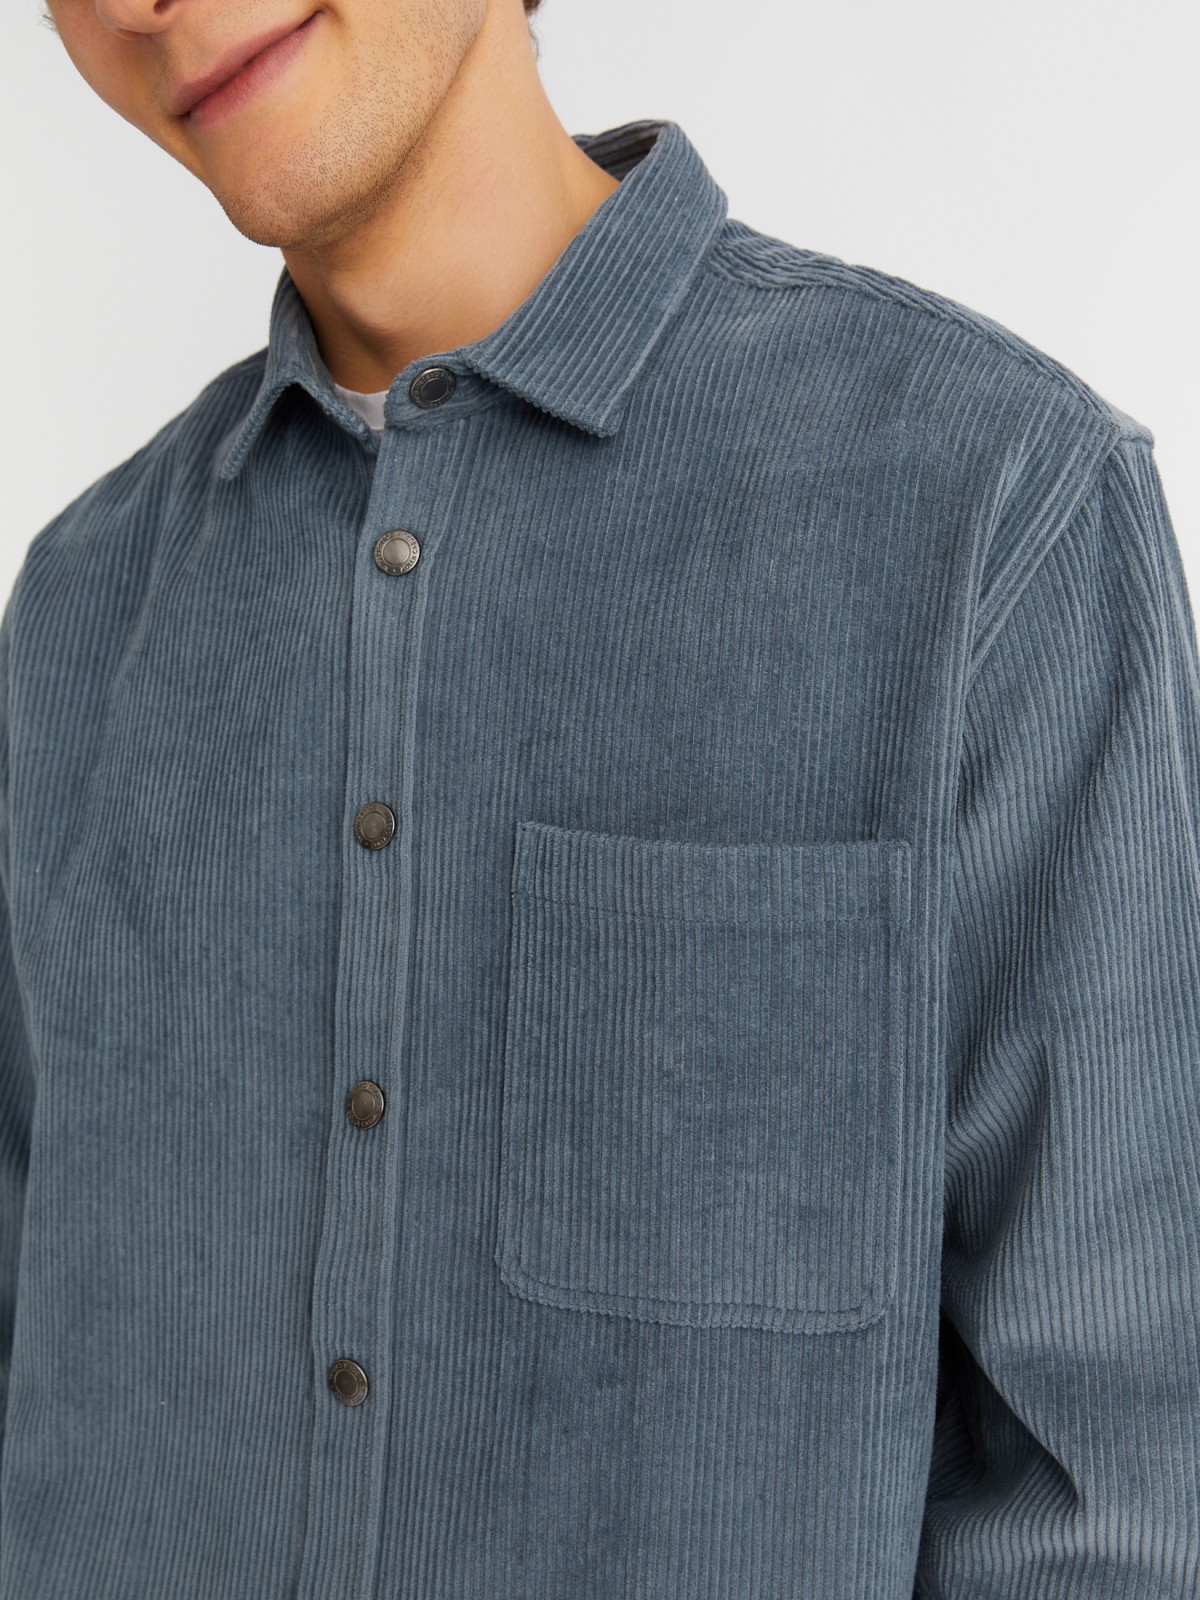 Вельветовая куртка-рубашка из хлопка с длинным рукавом zolla 21342214R041, цвет светло-голубой, размер M - фото 5